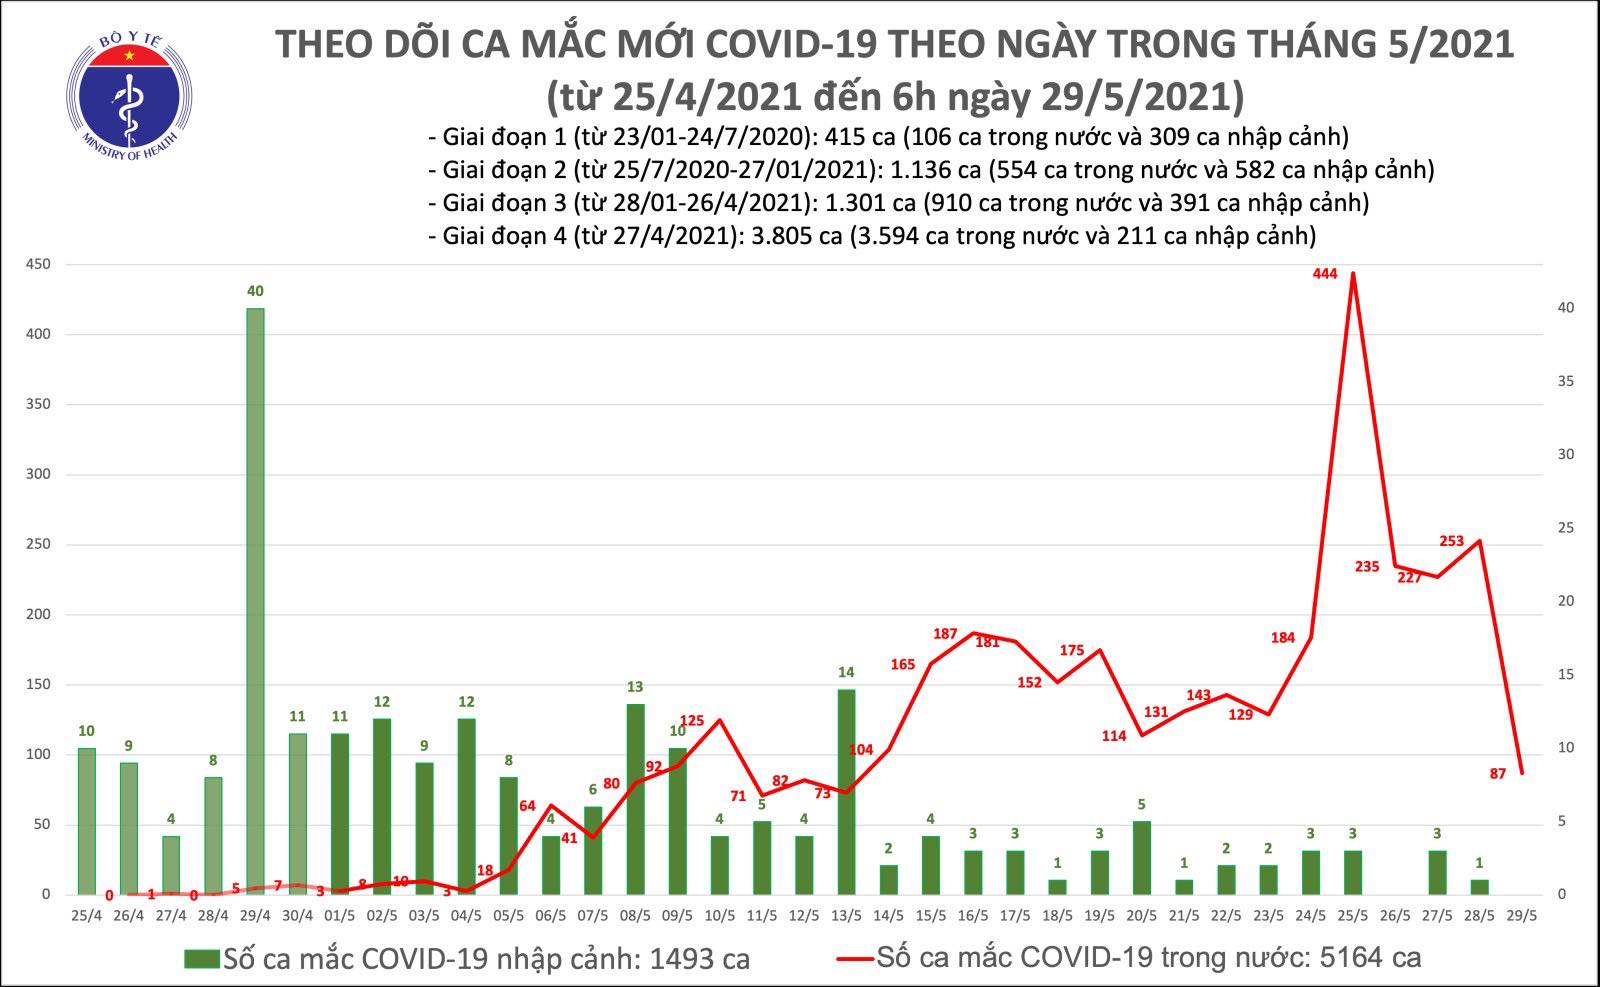 Thêm 87 ca mắc COVID-19 trong nước, Bắc Ninh và Bắc Giang chiếm 84 ca